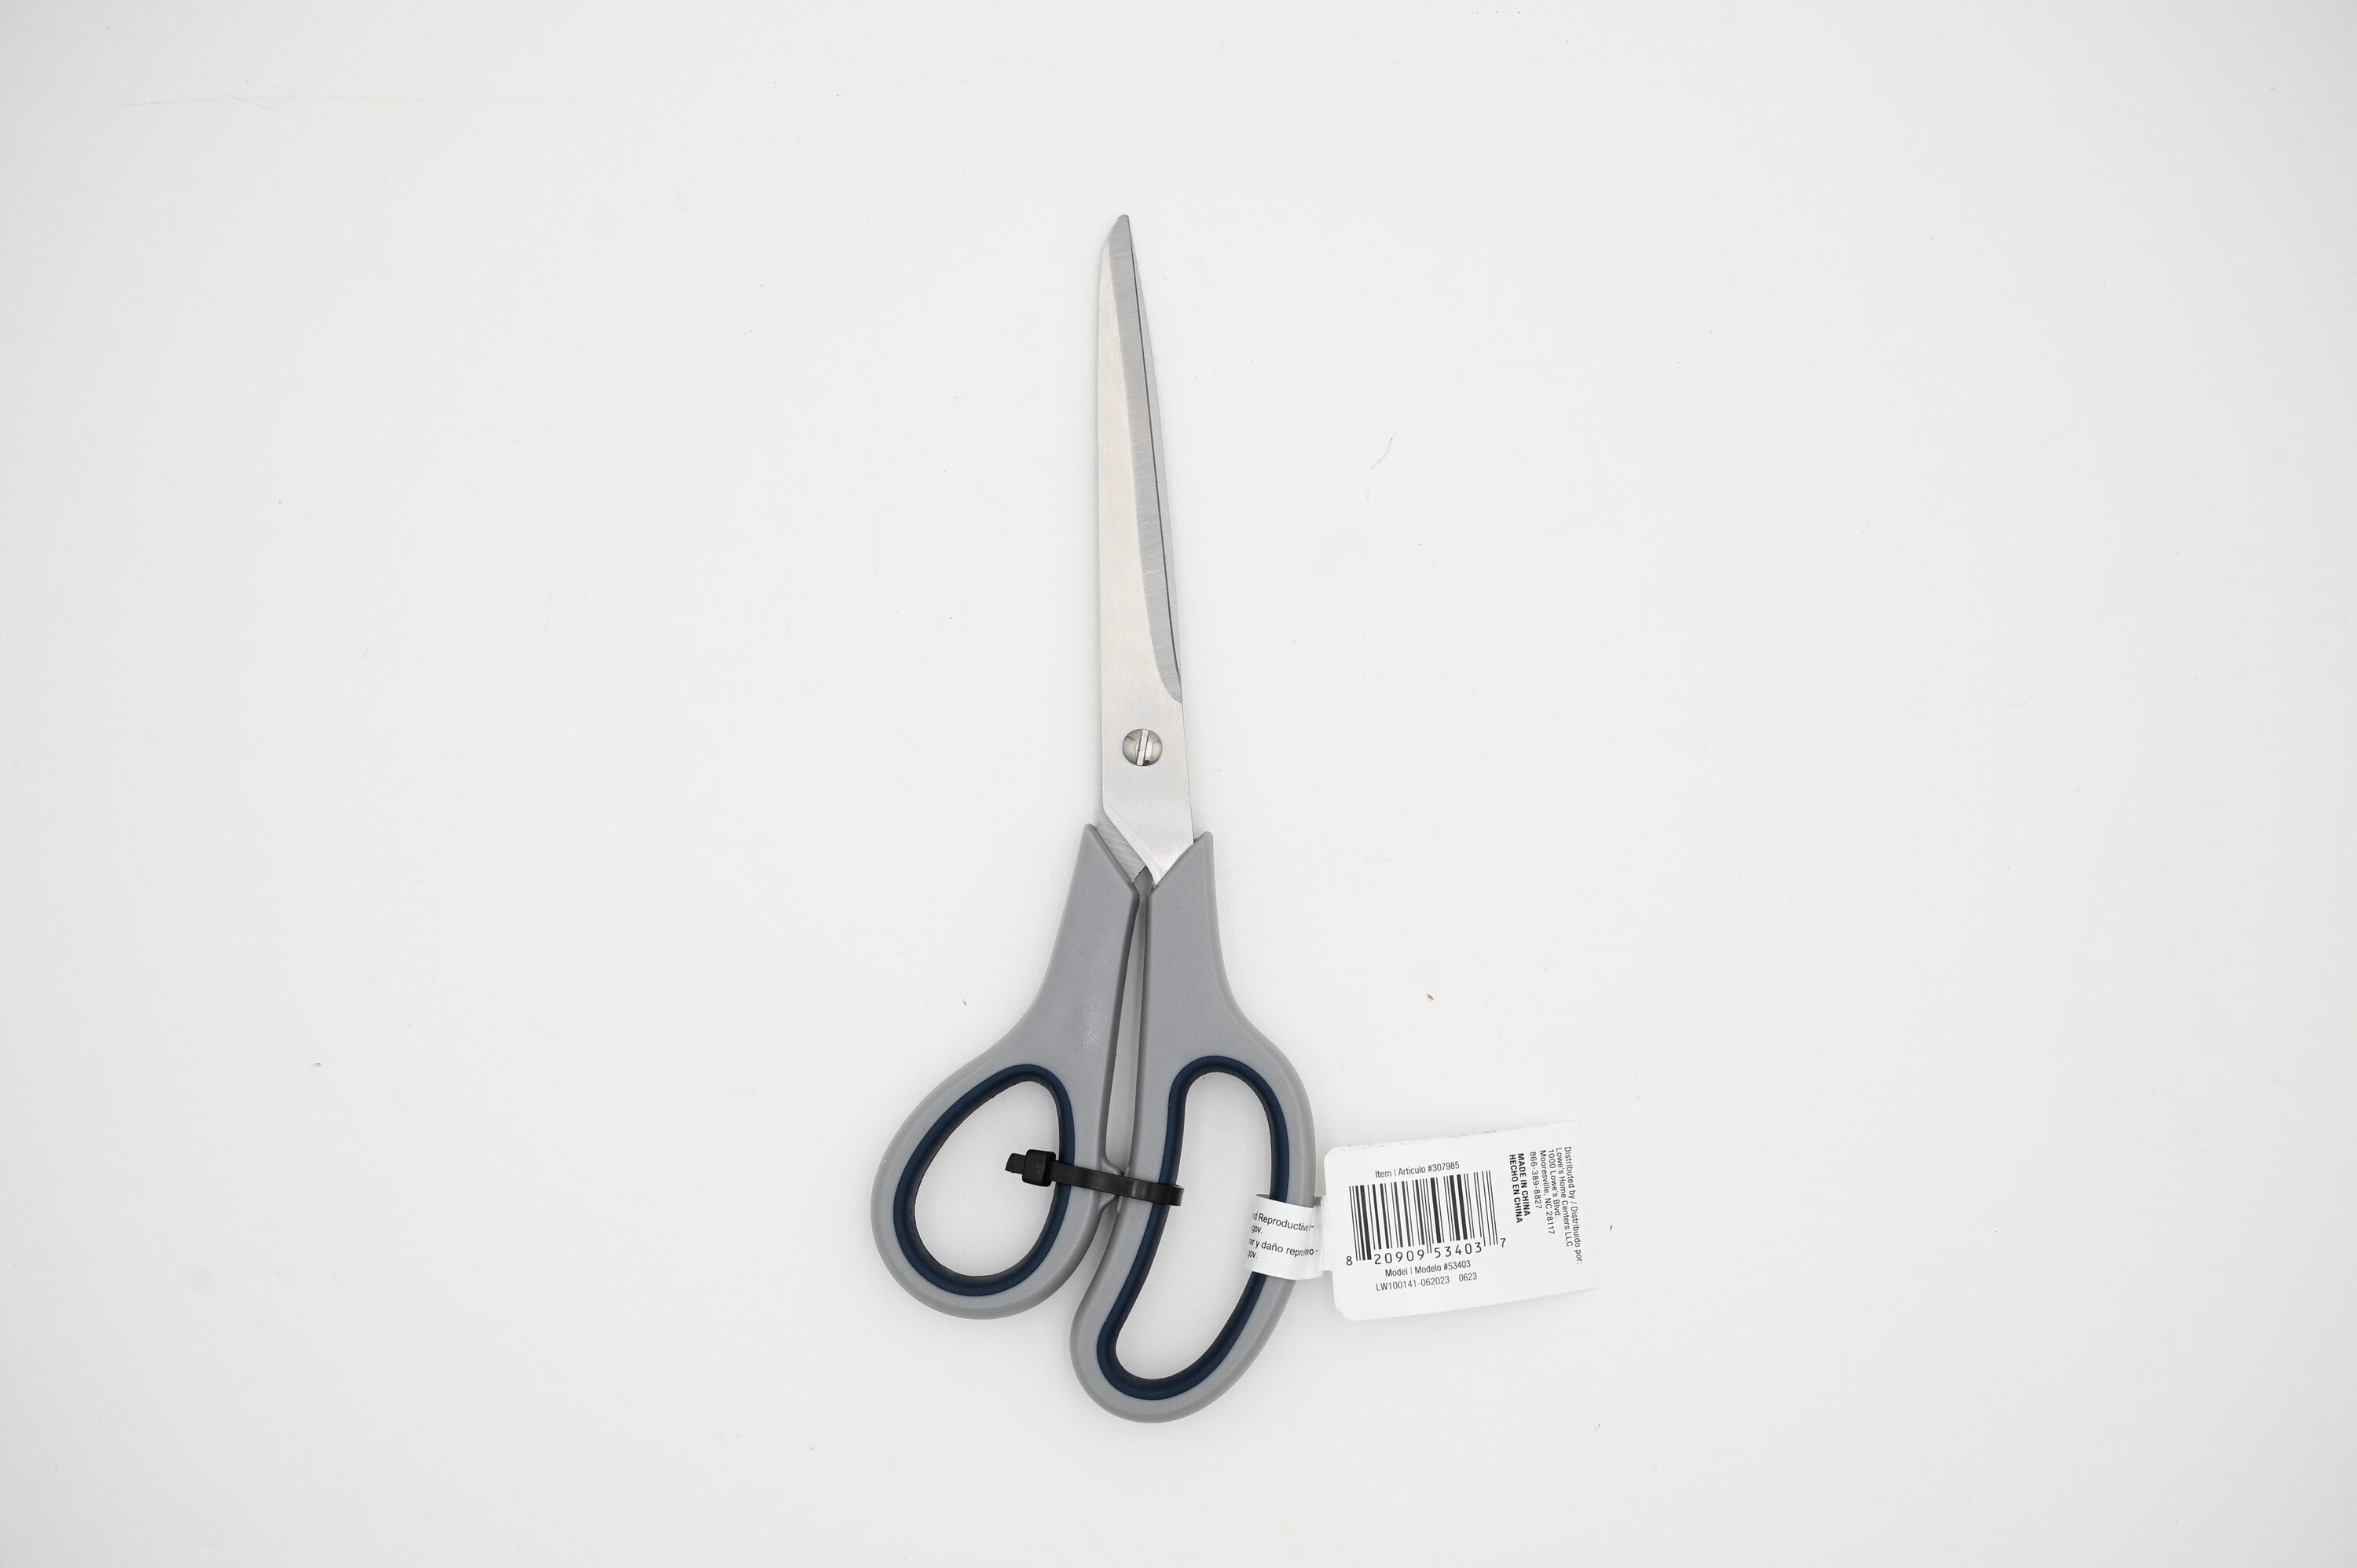 Kobalt 4.5-in Stainless Steel Non-Slip Scissors | 56176